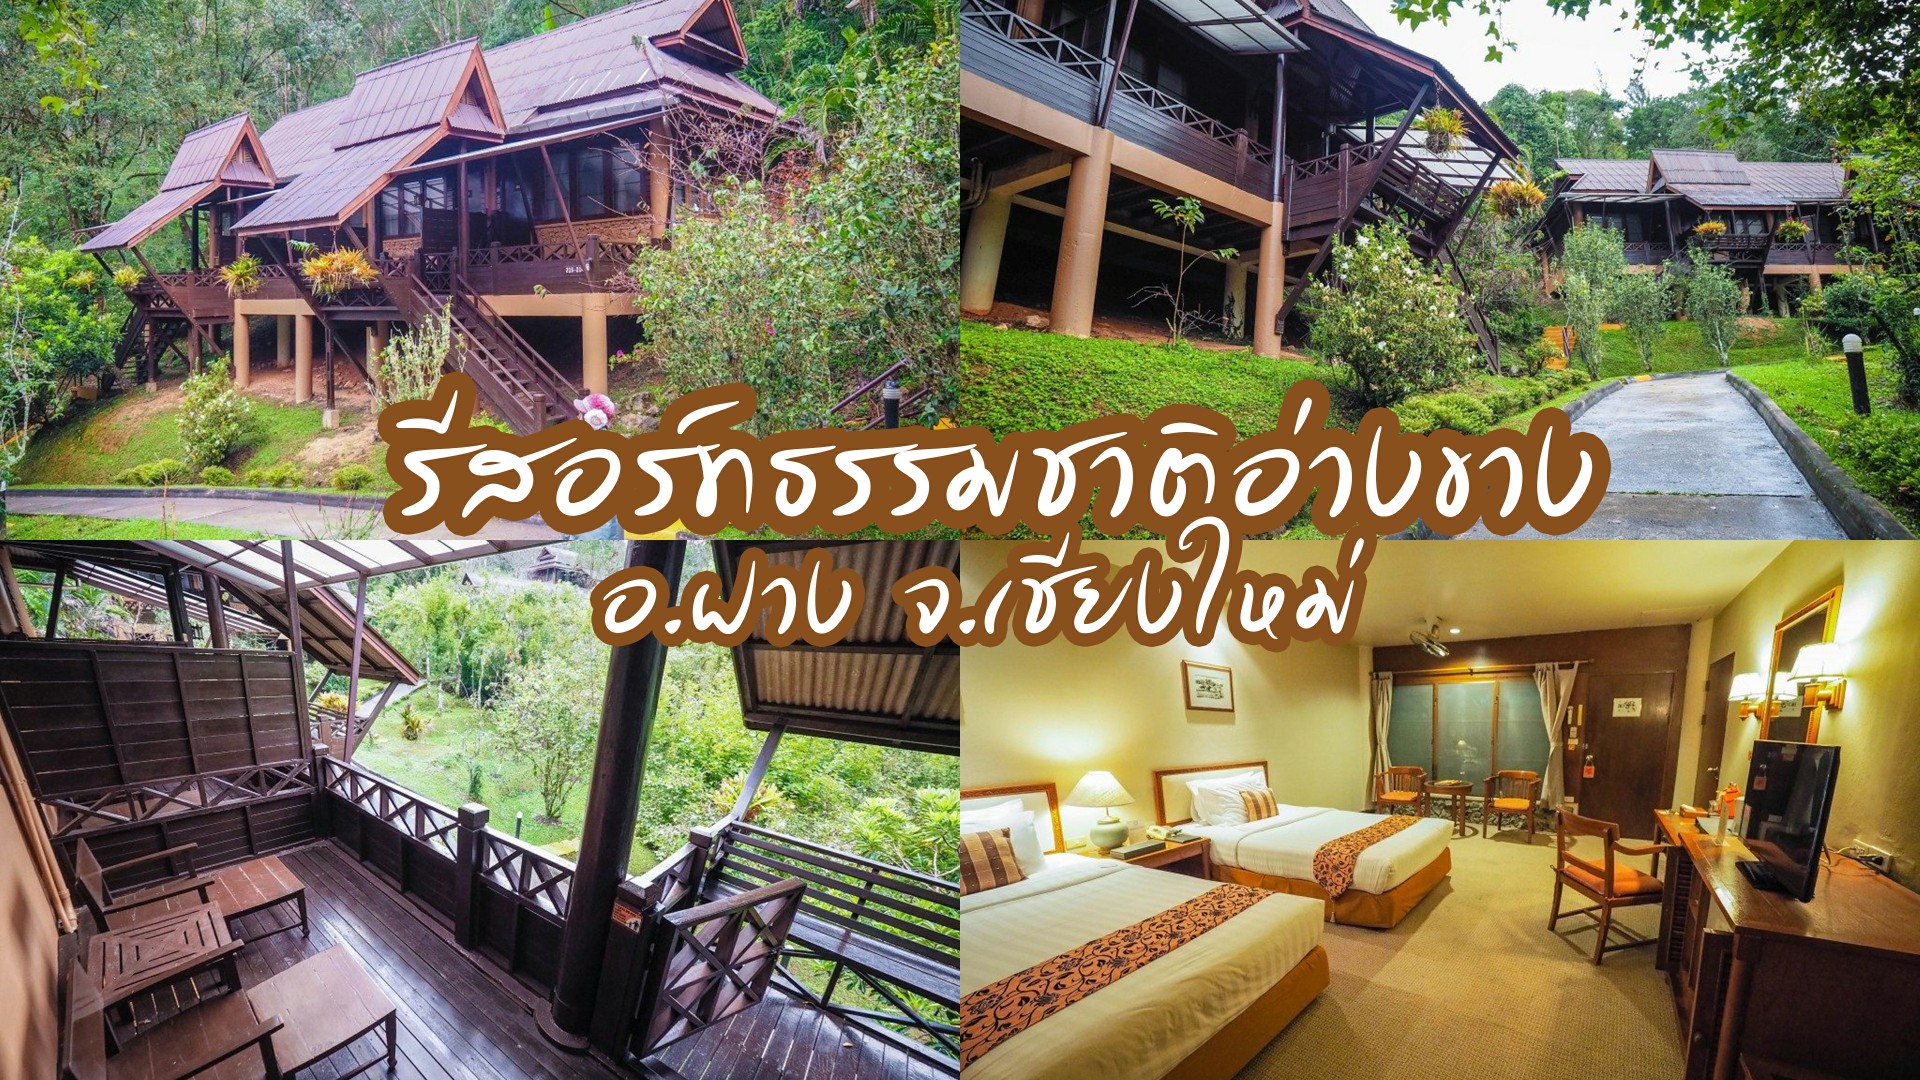 รีสอร์ทธรรมชาติอ่างขาง (Angkhang Nature Resort) ที่พักดอยอ่างขาง บรรยากาศดี  ท่ามกลางธรรมชาติ อ.ฝาง จ.เชียงใหม่ | TripTH | ทริปไทยแลนด์